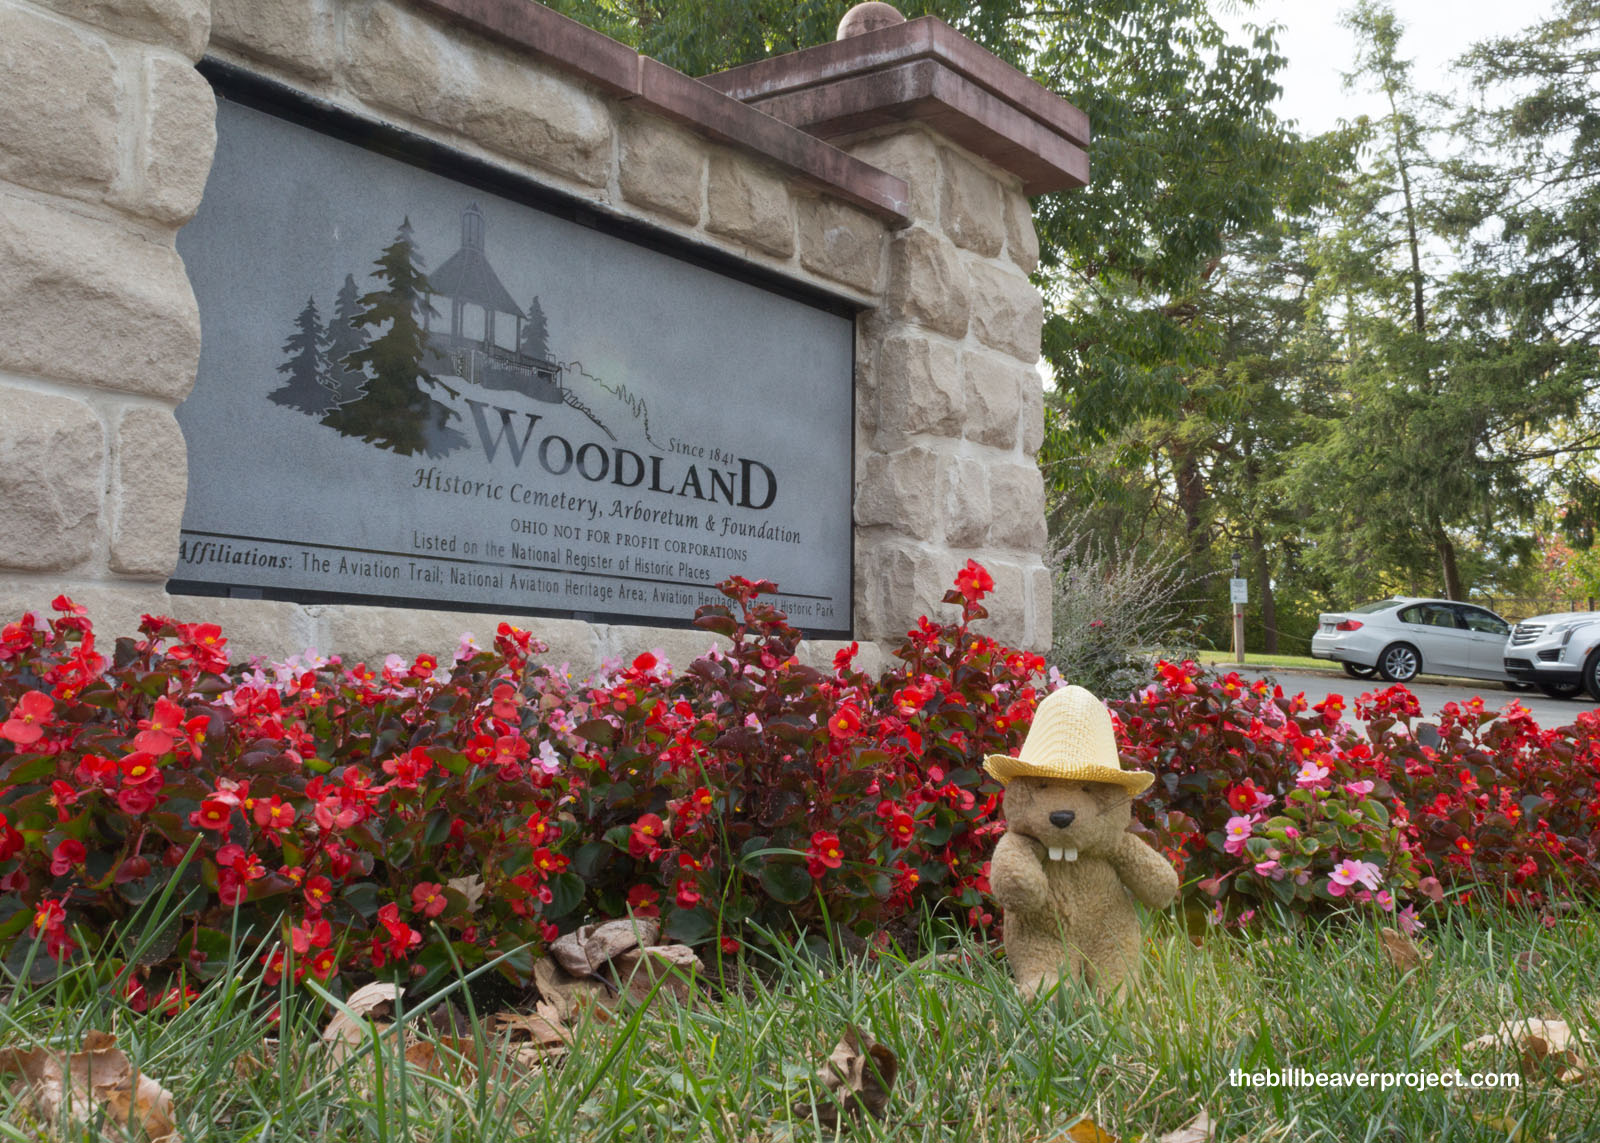 Woodland Cemetery and Arboretum